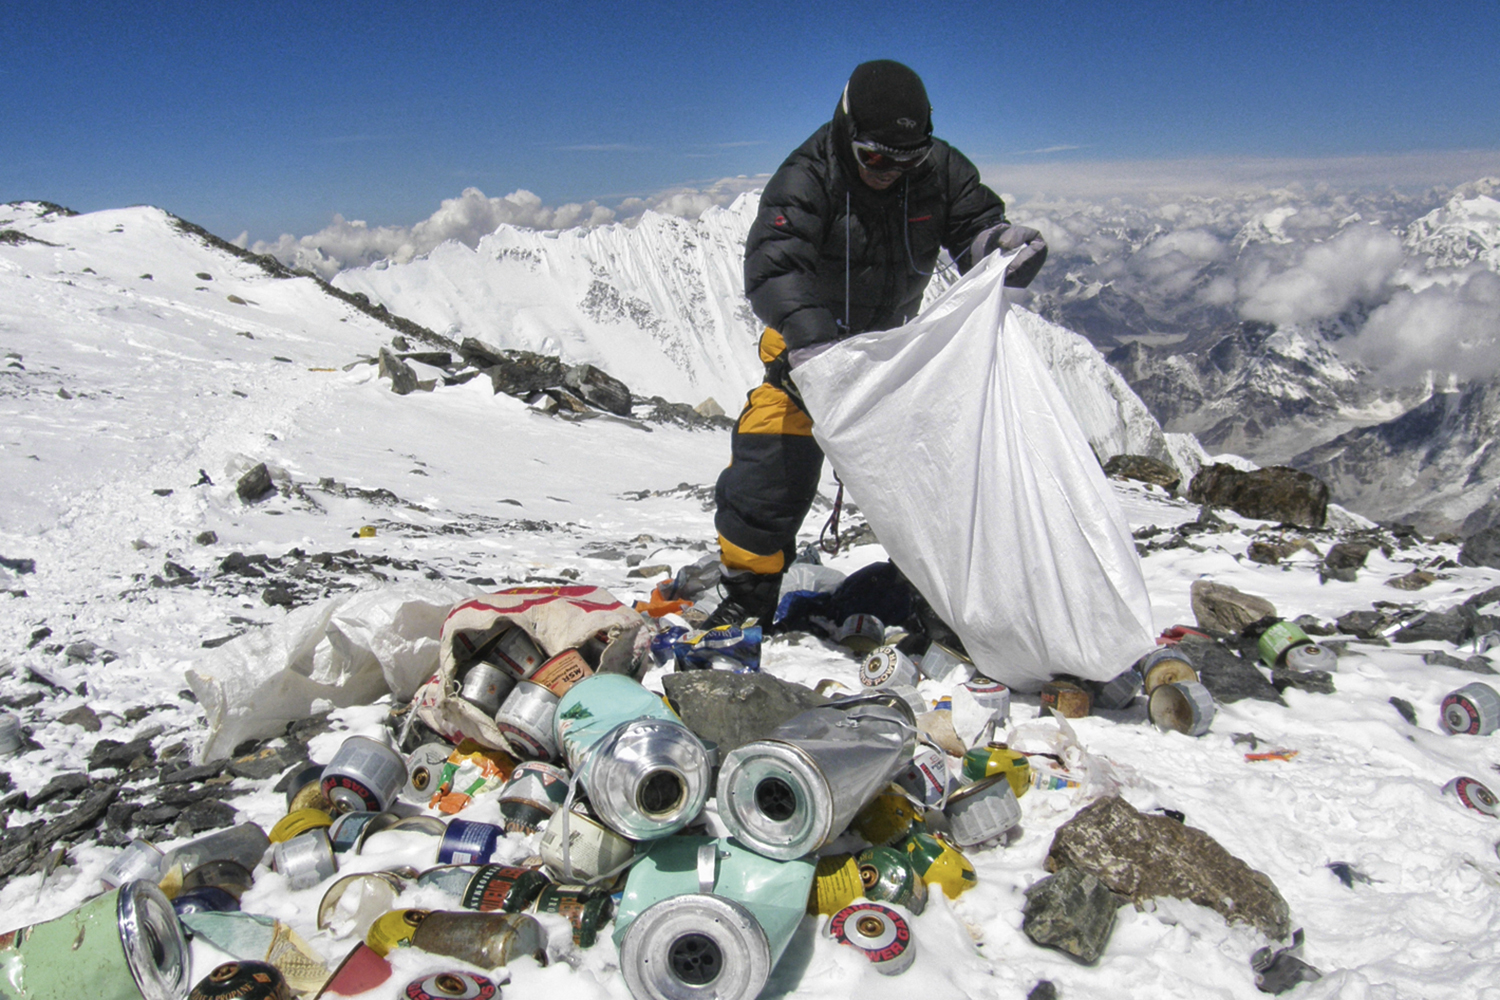 POLUIÇÃO - Lixo acumulado: os equipamentos das expedições são abandonados -